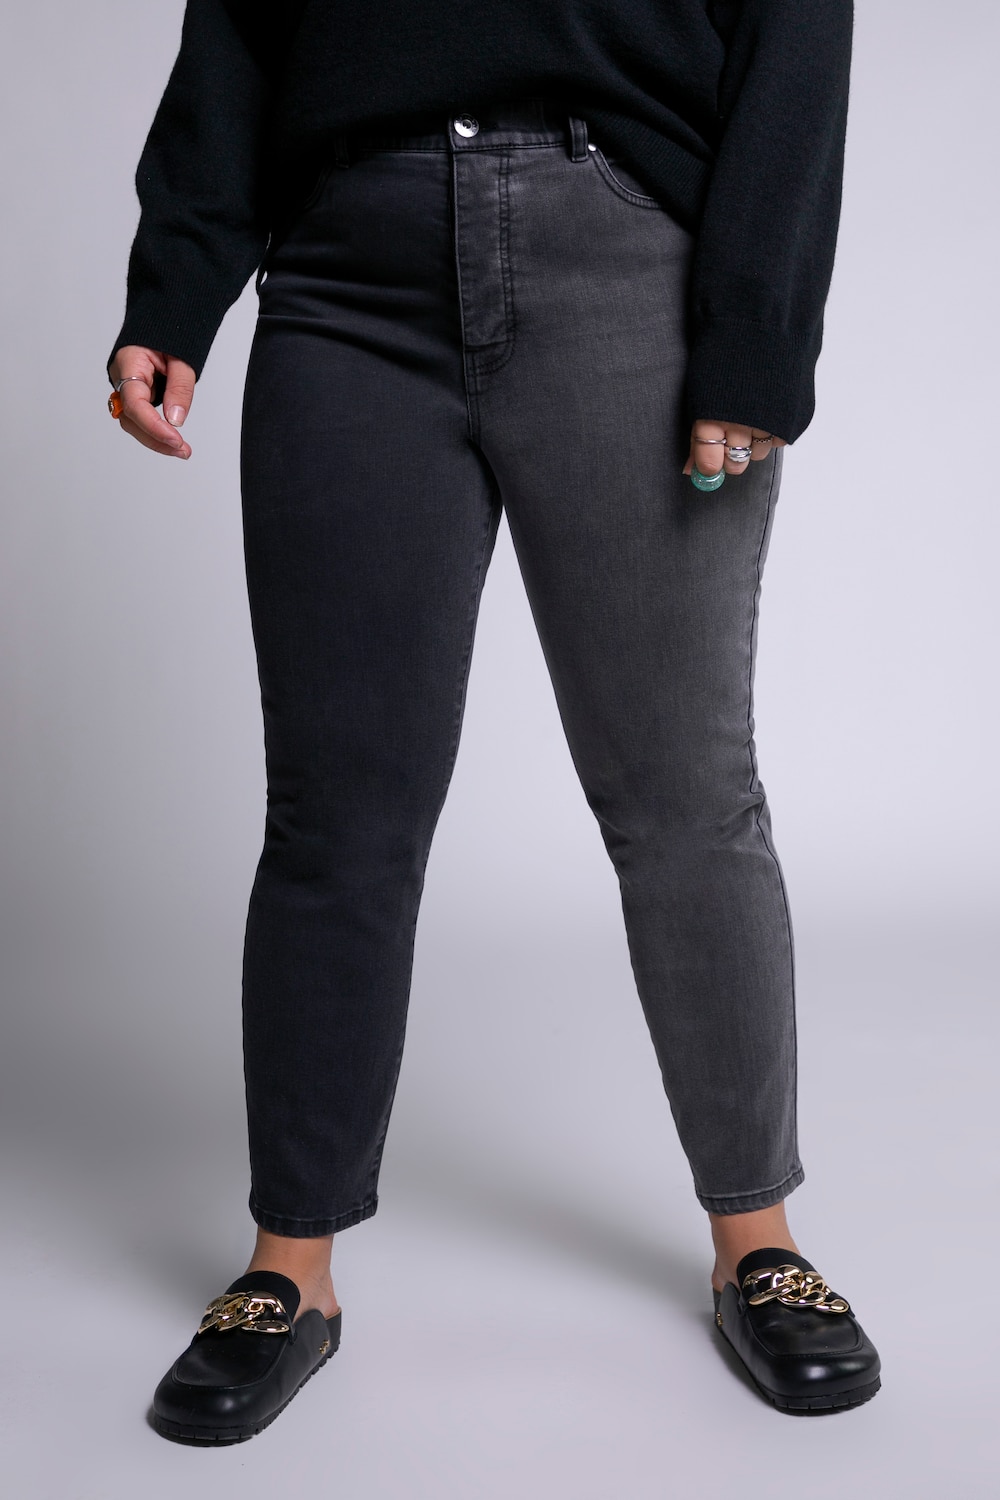 Grote Maten mom jeans, Dames, zwart, Maat: 54, Katoen, Studio Untold